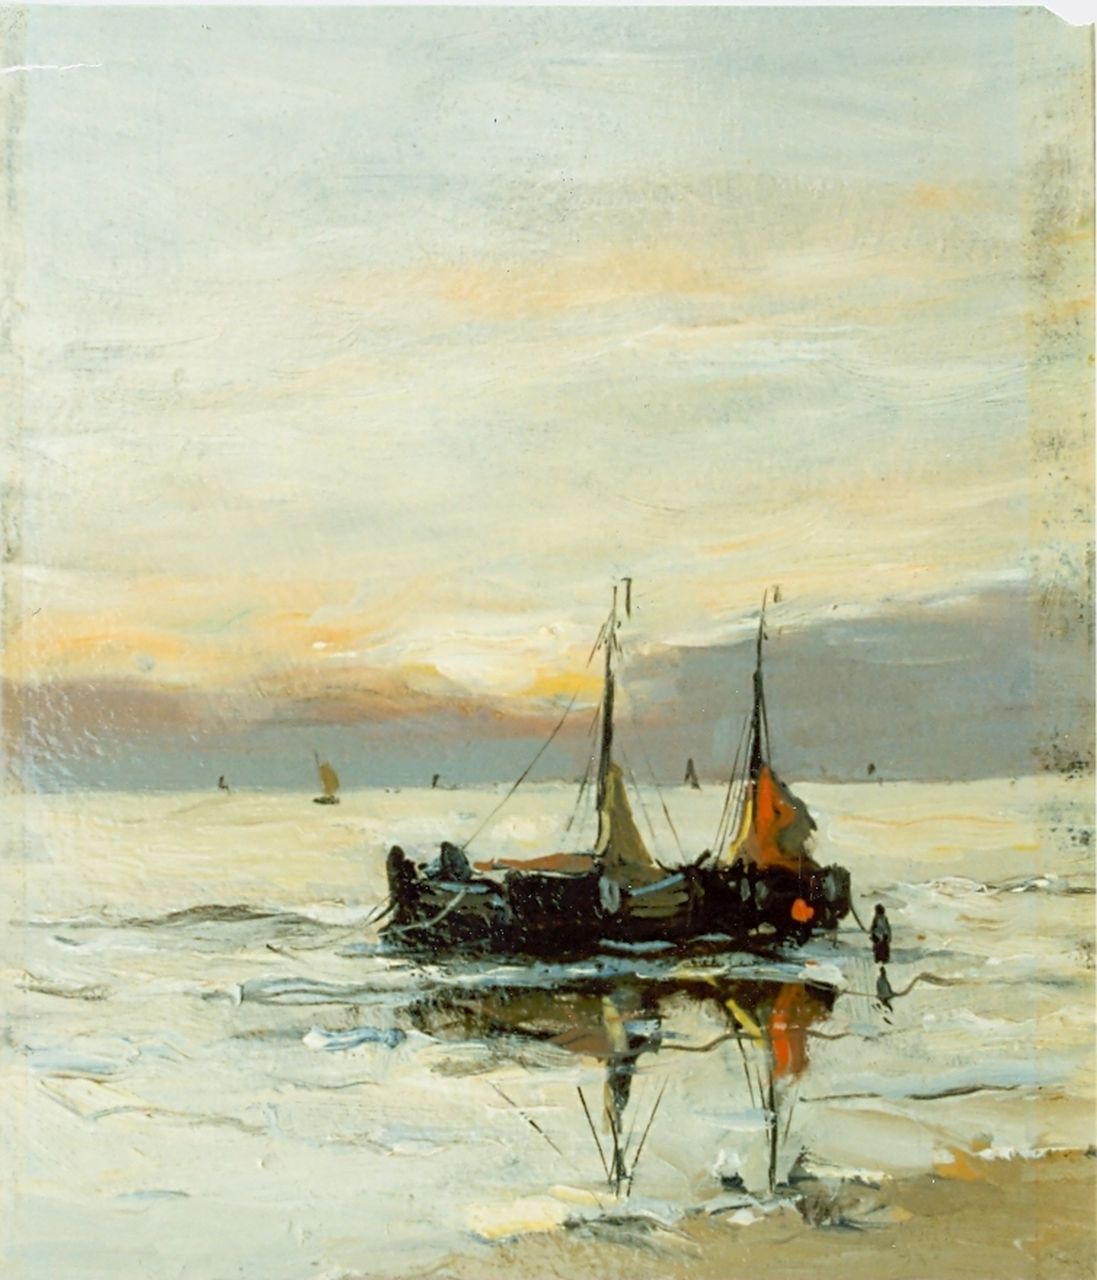 Munthe G.A.L.  | Gerhard Arij Ludwig 'Morgenstjerne' Munthe, 'Bomschuiten' in the surf, oil on board 21.0 x 16.5 cm, signed l.l.